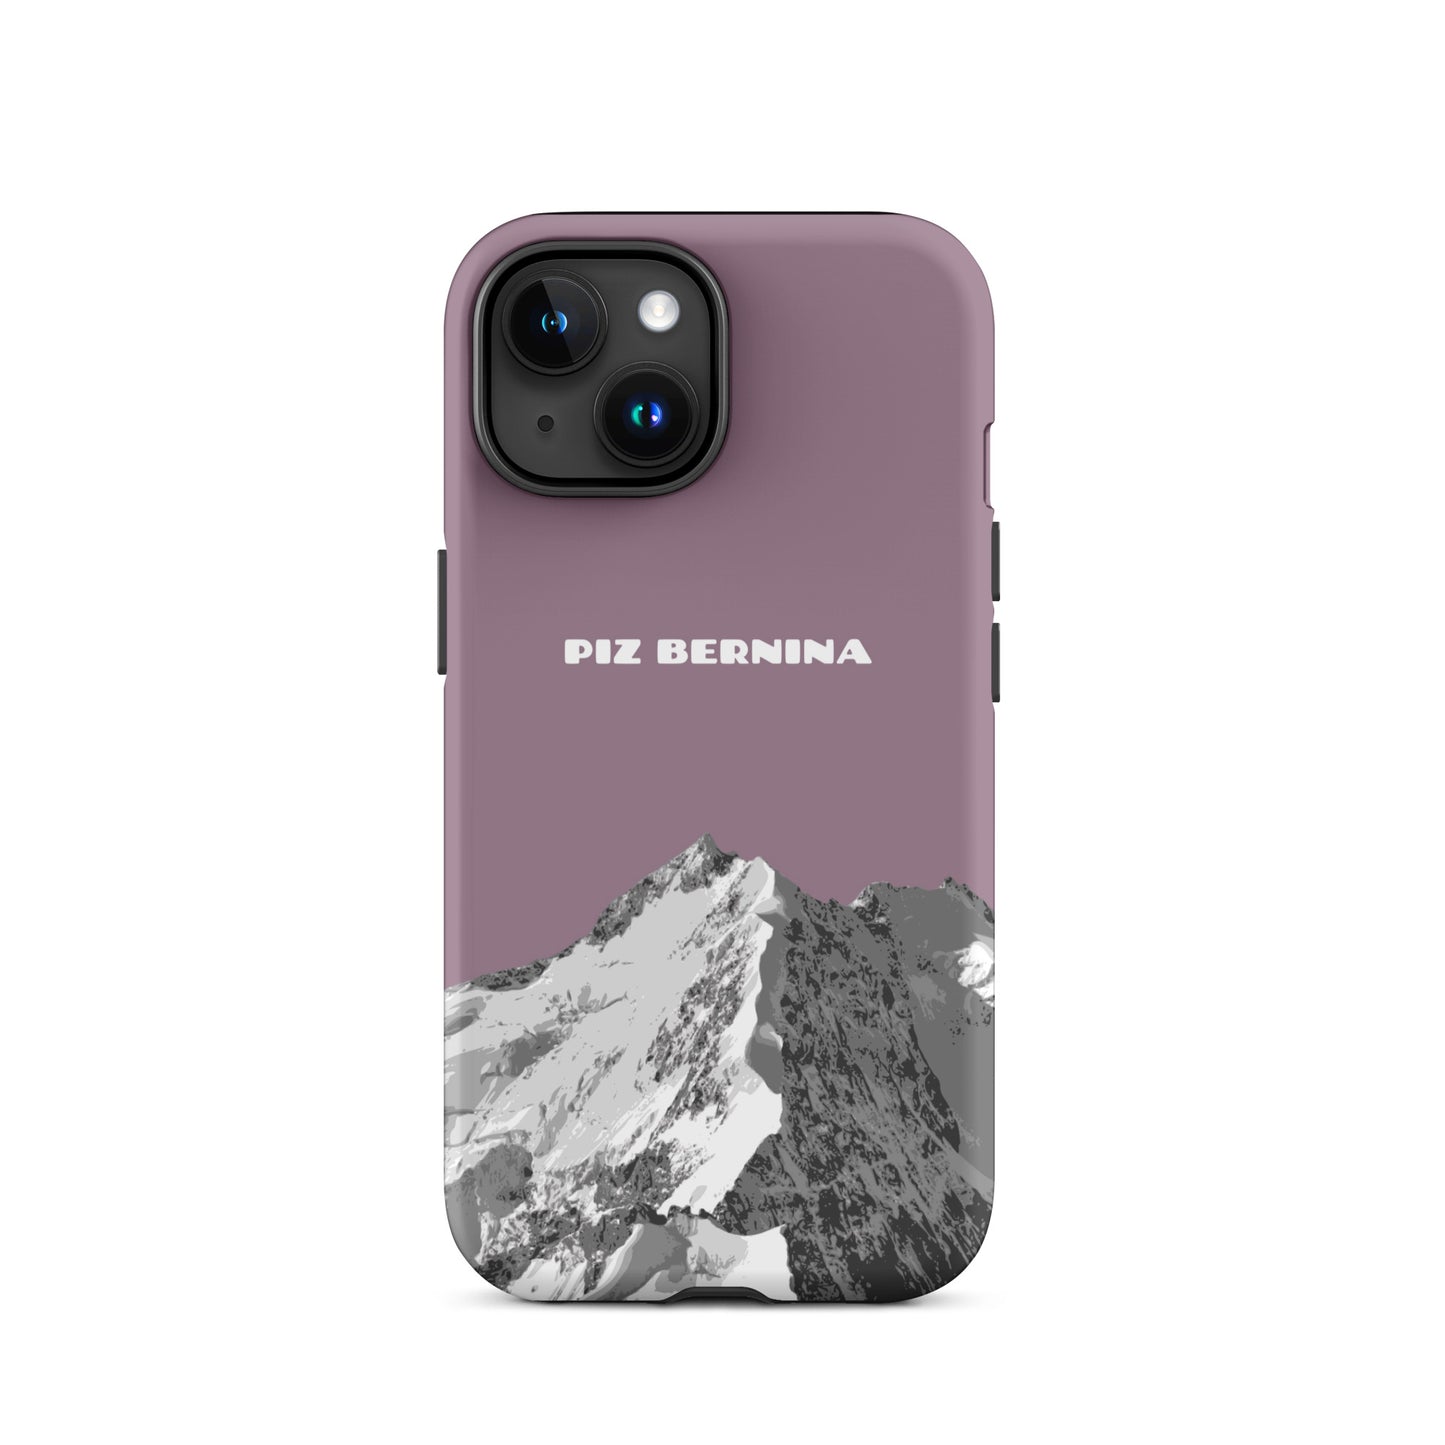 Hülle für das iPhone 15 von Apple in der Farbe Pastellviolett, dass den Piz Bernina in Graubünden zeigt.